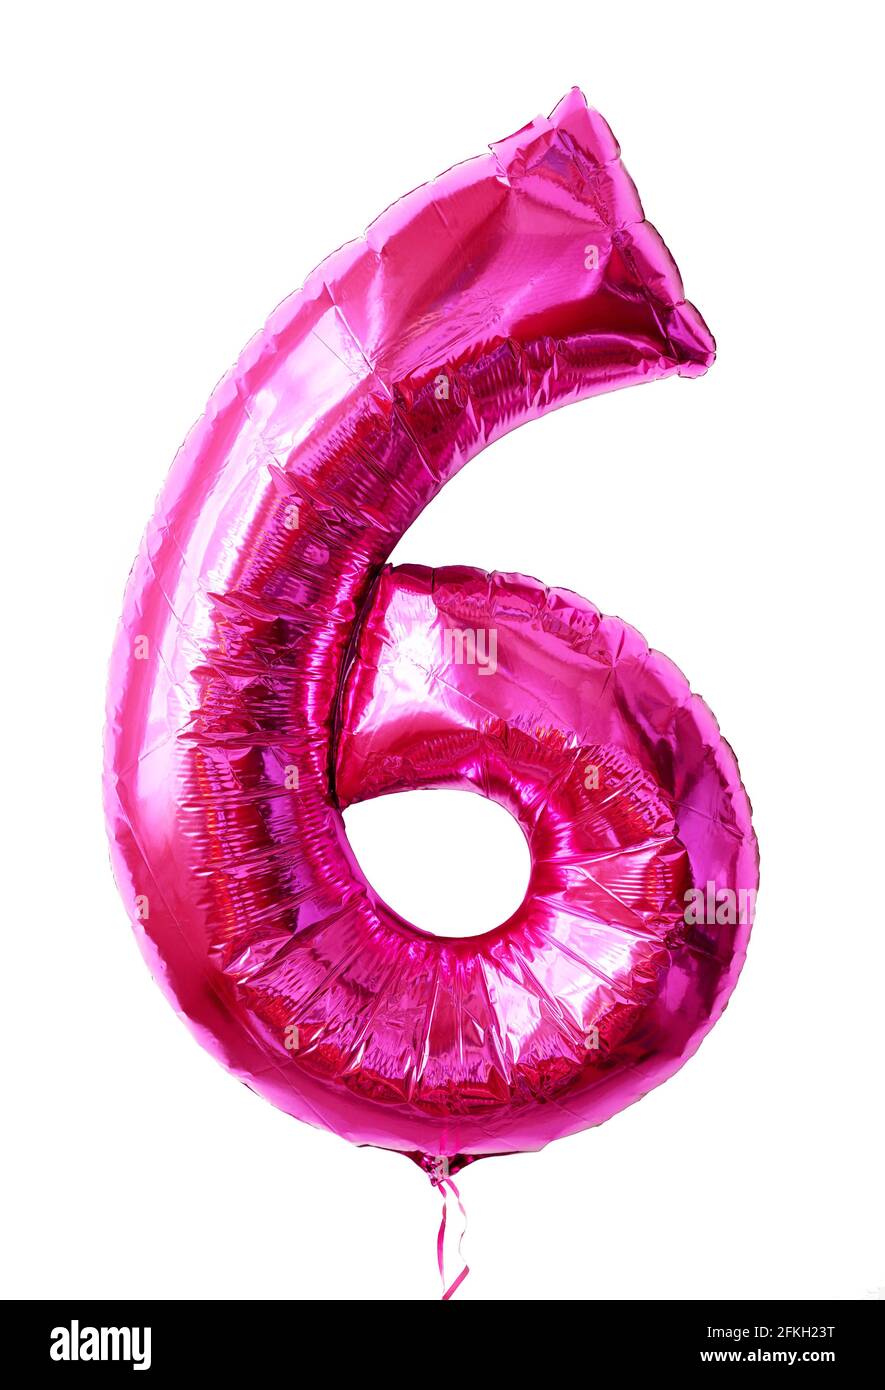 Folienballon Zahl 6 isoliert auf weißem Hintergrund, rosa Zahl sechs als aufblasbarer Ballon Zahl für Party gemacht. Glänzende metallische Flugfigur 6 für b Stockfoto